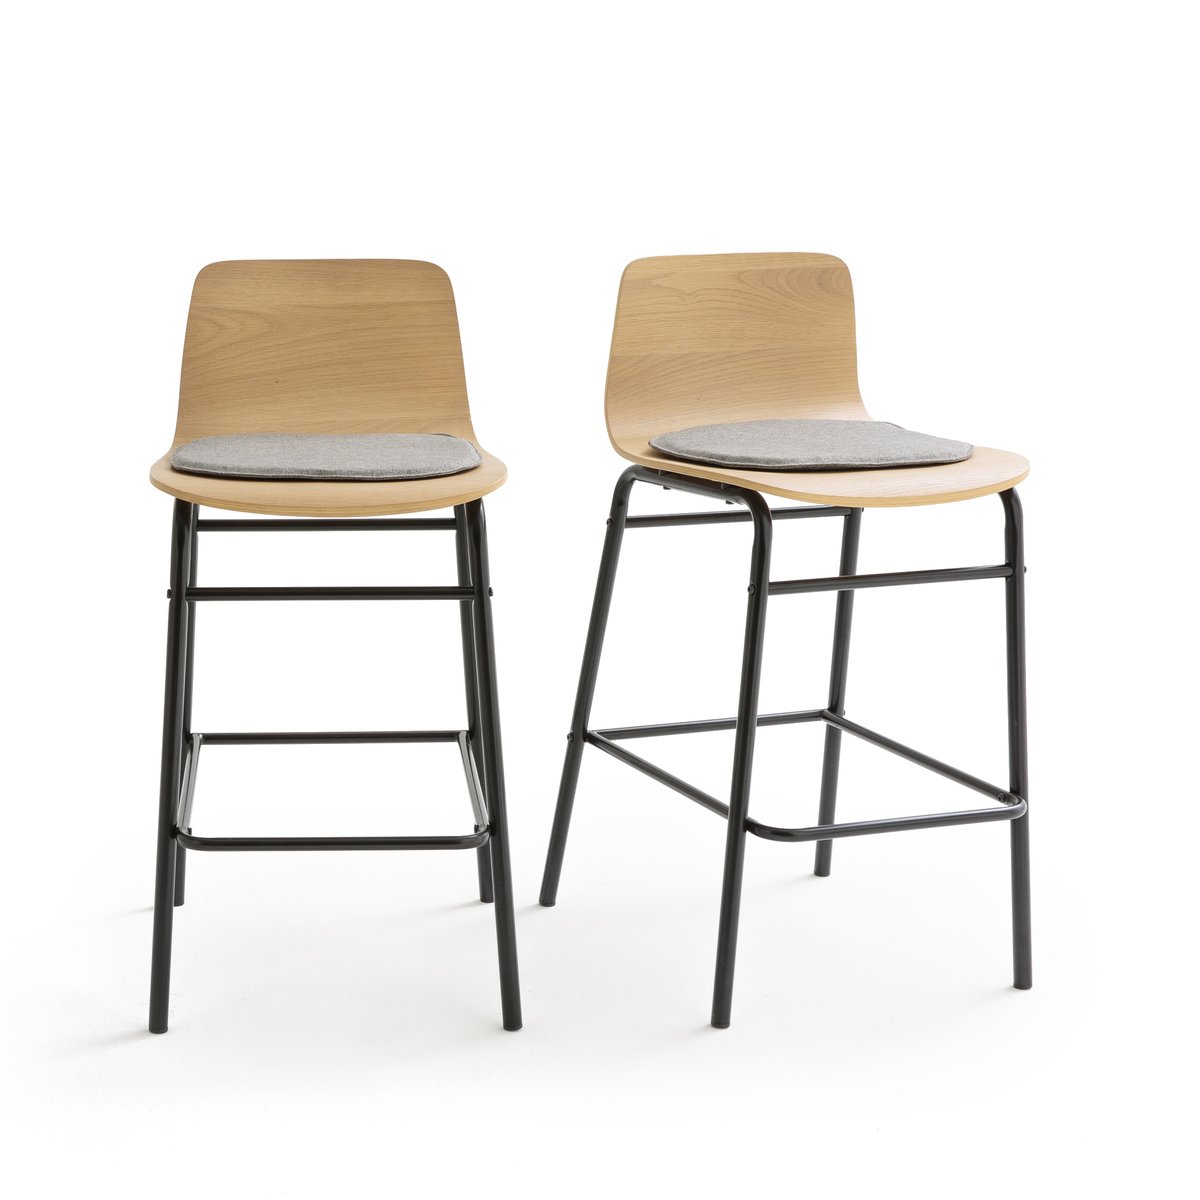 Комплект из 2 барных стульев Средней высоты Blutante единый размер каштановый